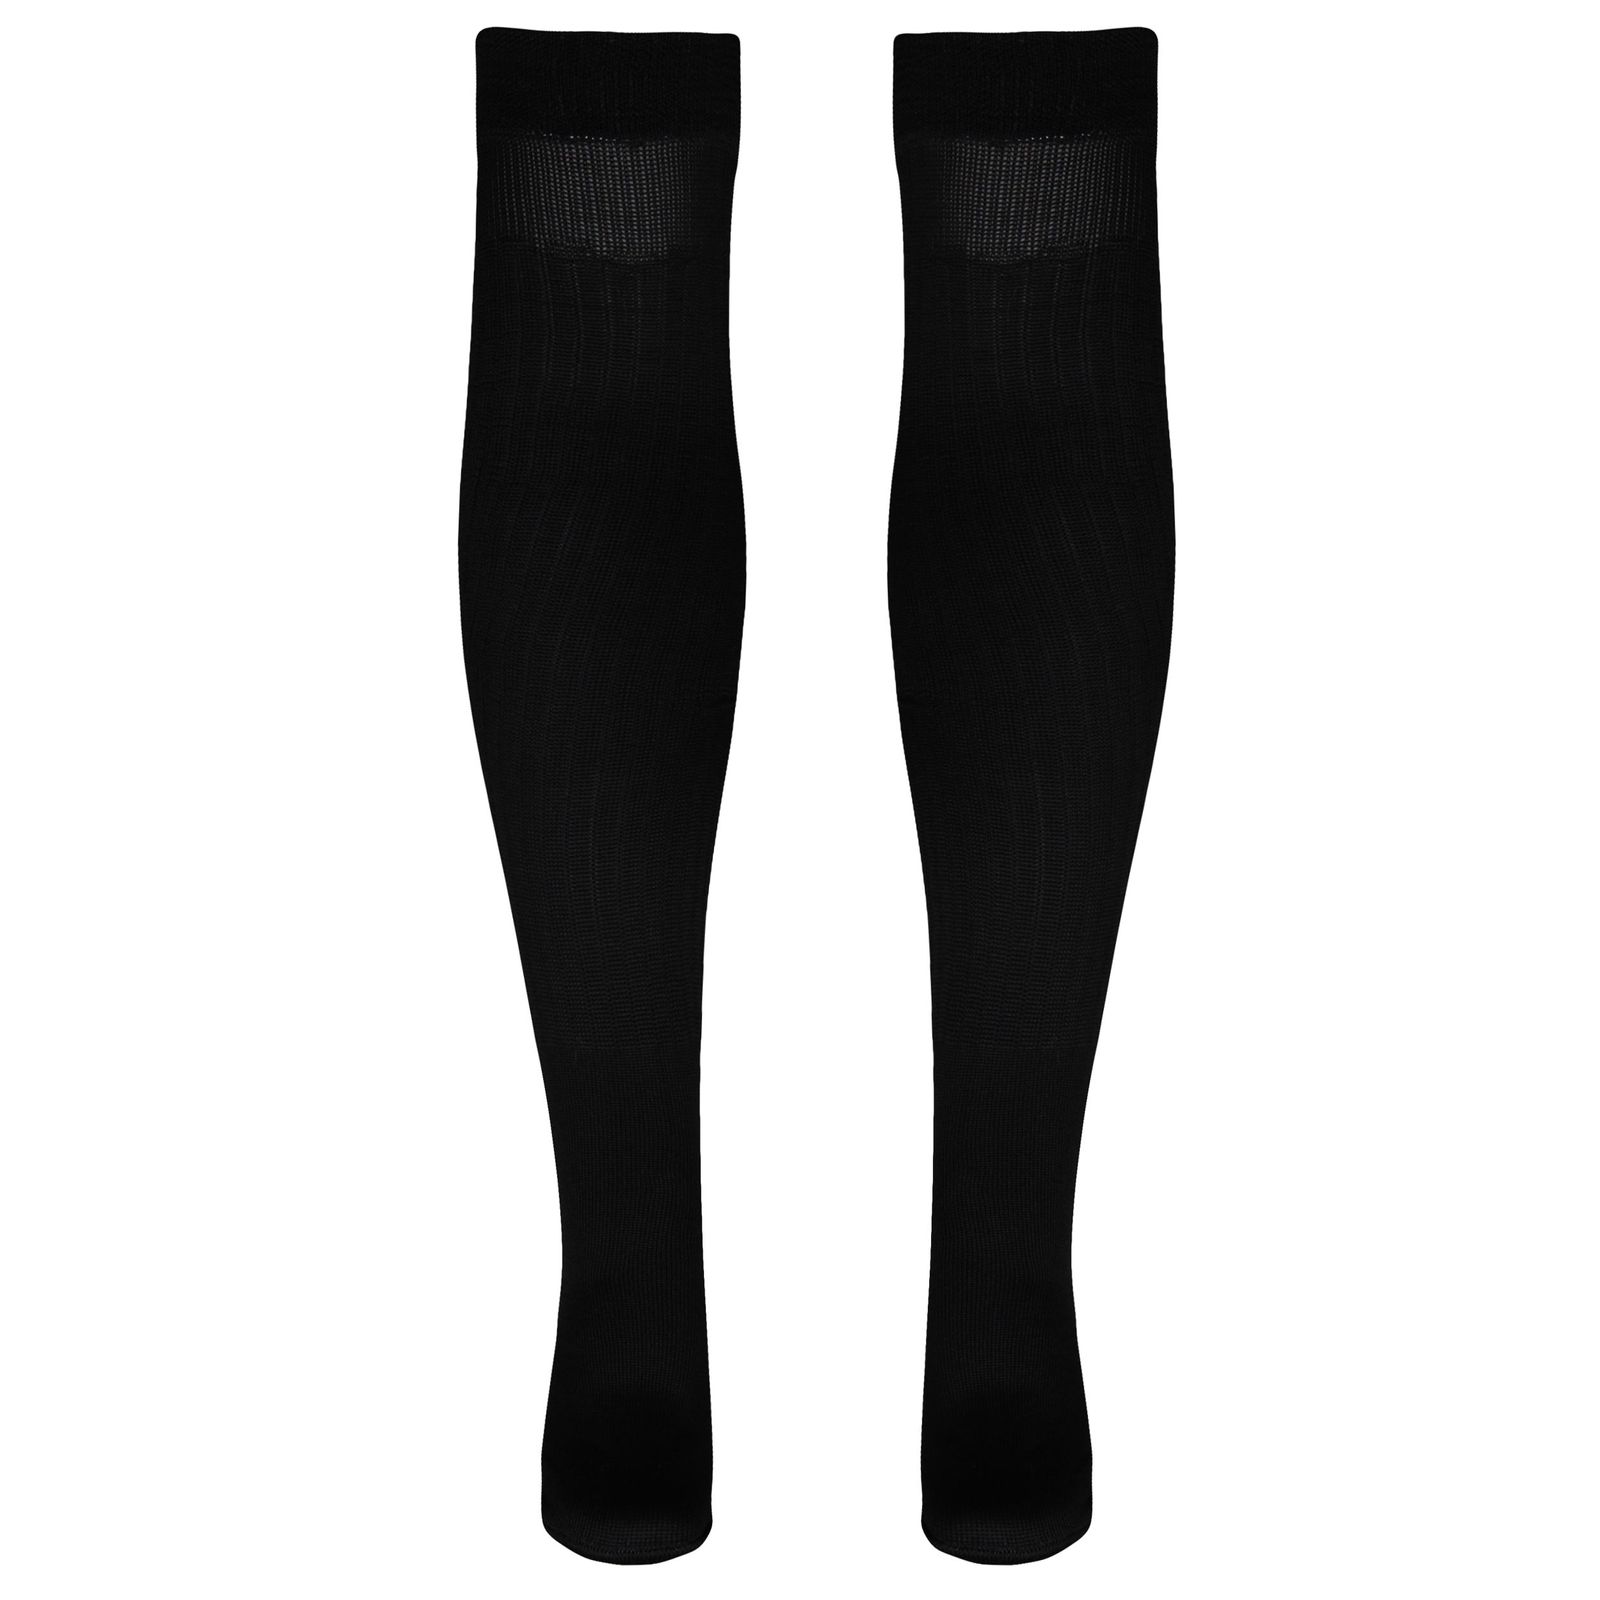 جوراب ورزشی ساق بلند مردانه ماییلدا مدل 4185 رنگ مشکی -  - 2